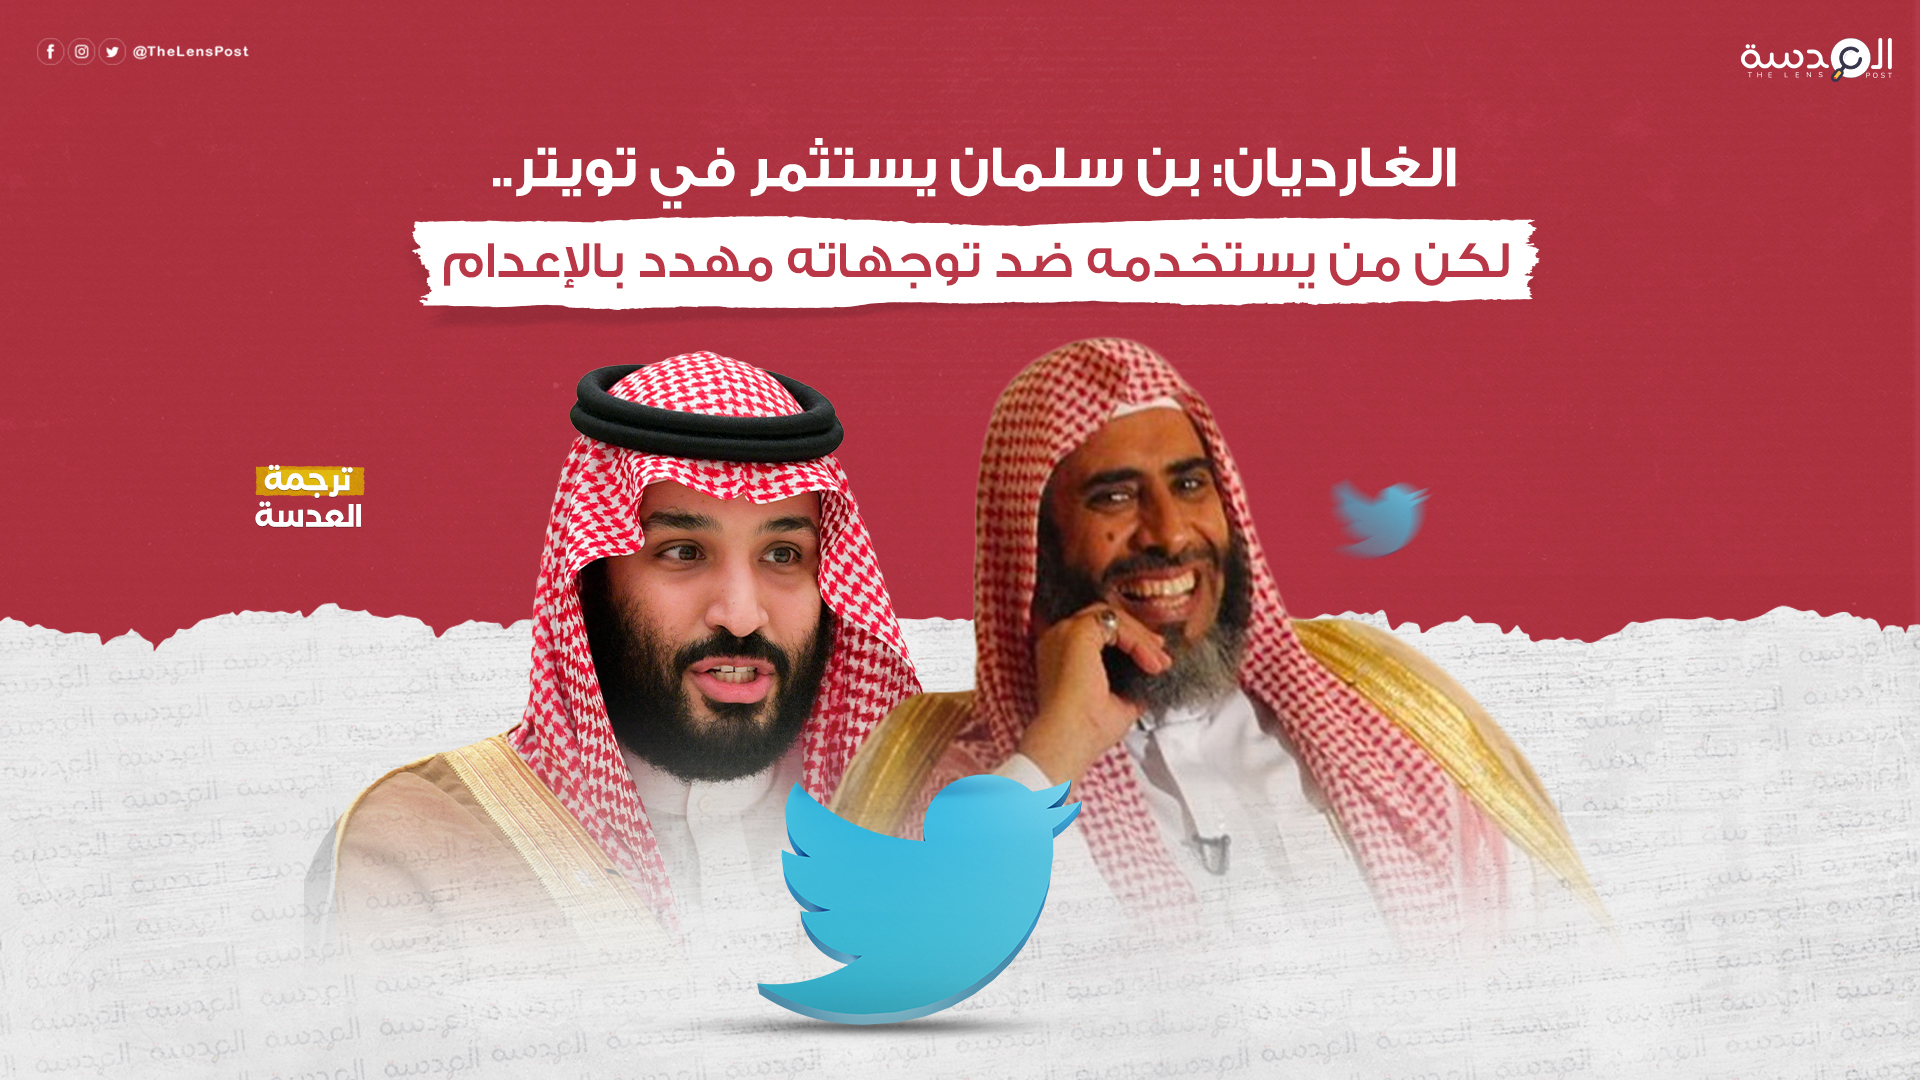 الغارديان: بن سلمان يستثمر في تويتر... لكن من يستخدمه ضد توجهاته مهدد بالإعدام